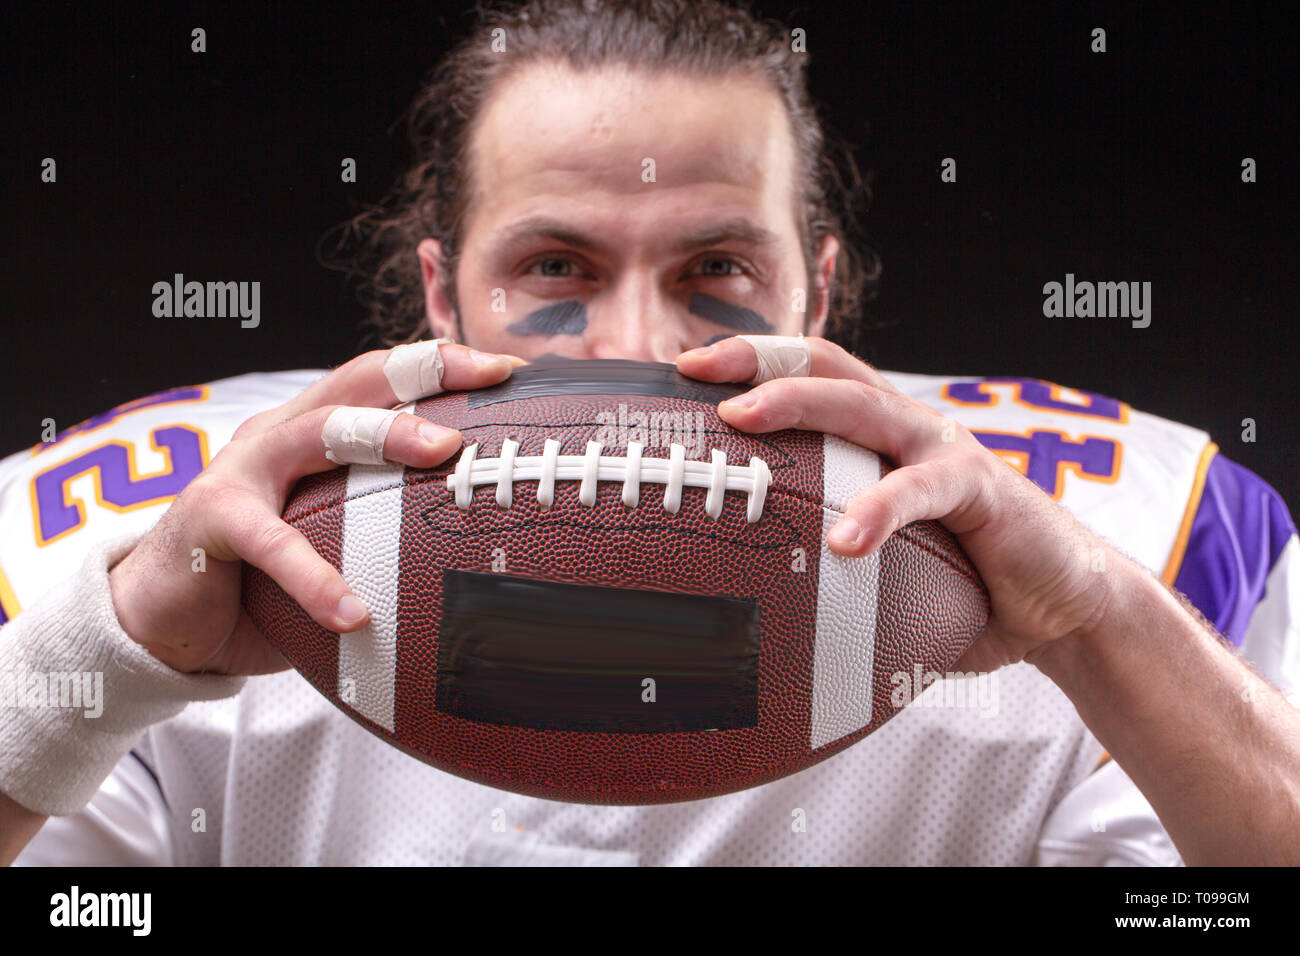 Immagine ritagliata di sportivo tenendo il football americano la sfera Foto Stock